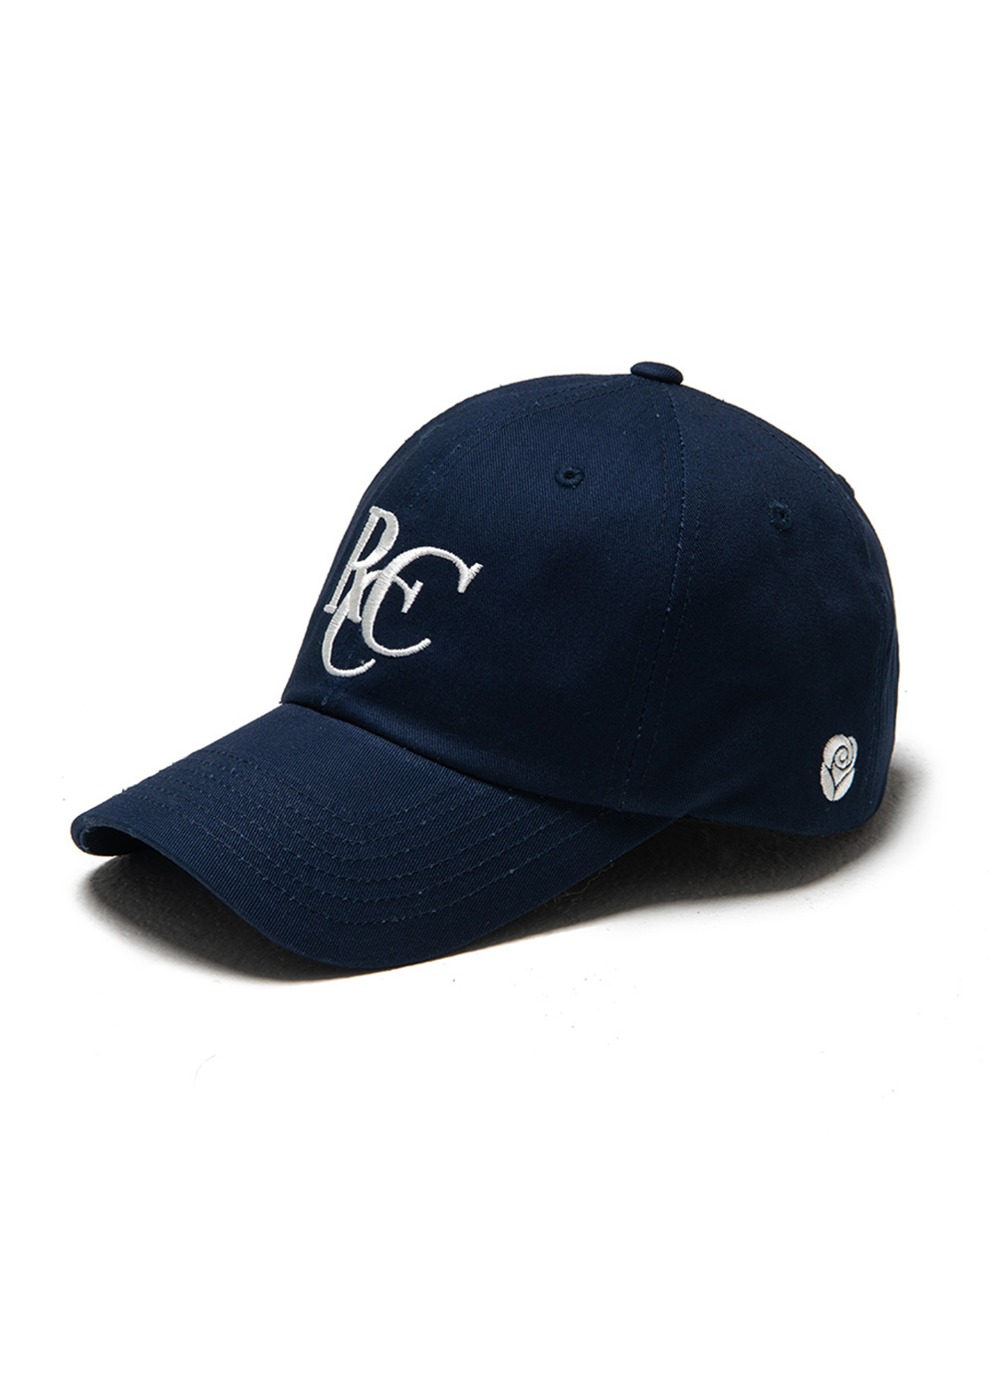 RCC Logo ball cap [NAVY]RCC Logo ball cap [NAVY]자체브랜드